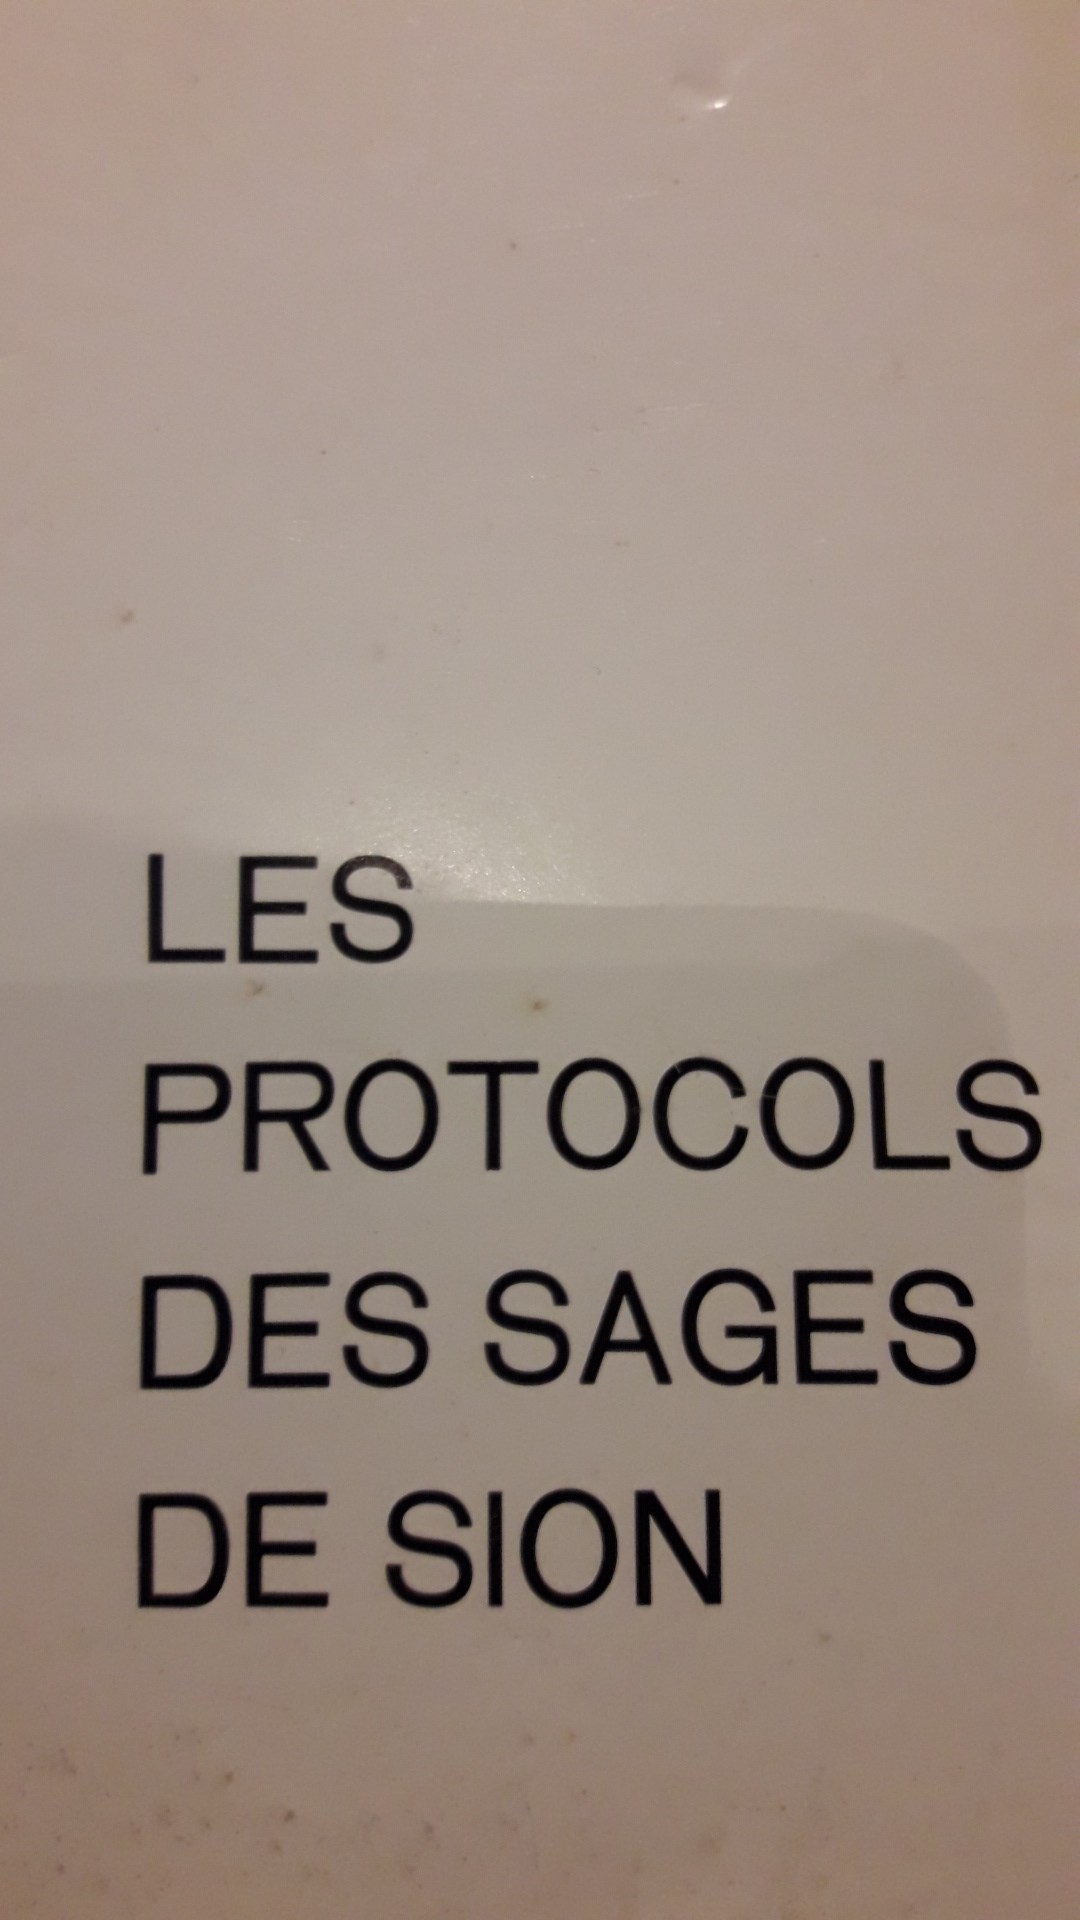 Les protocols de sages de sion - die geheimnisse der weisen von sion / duits frans